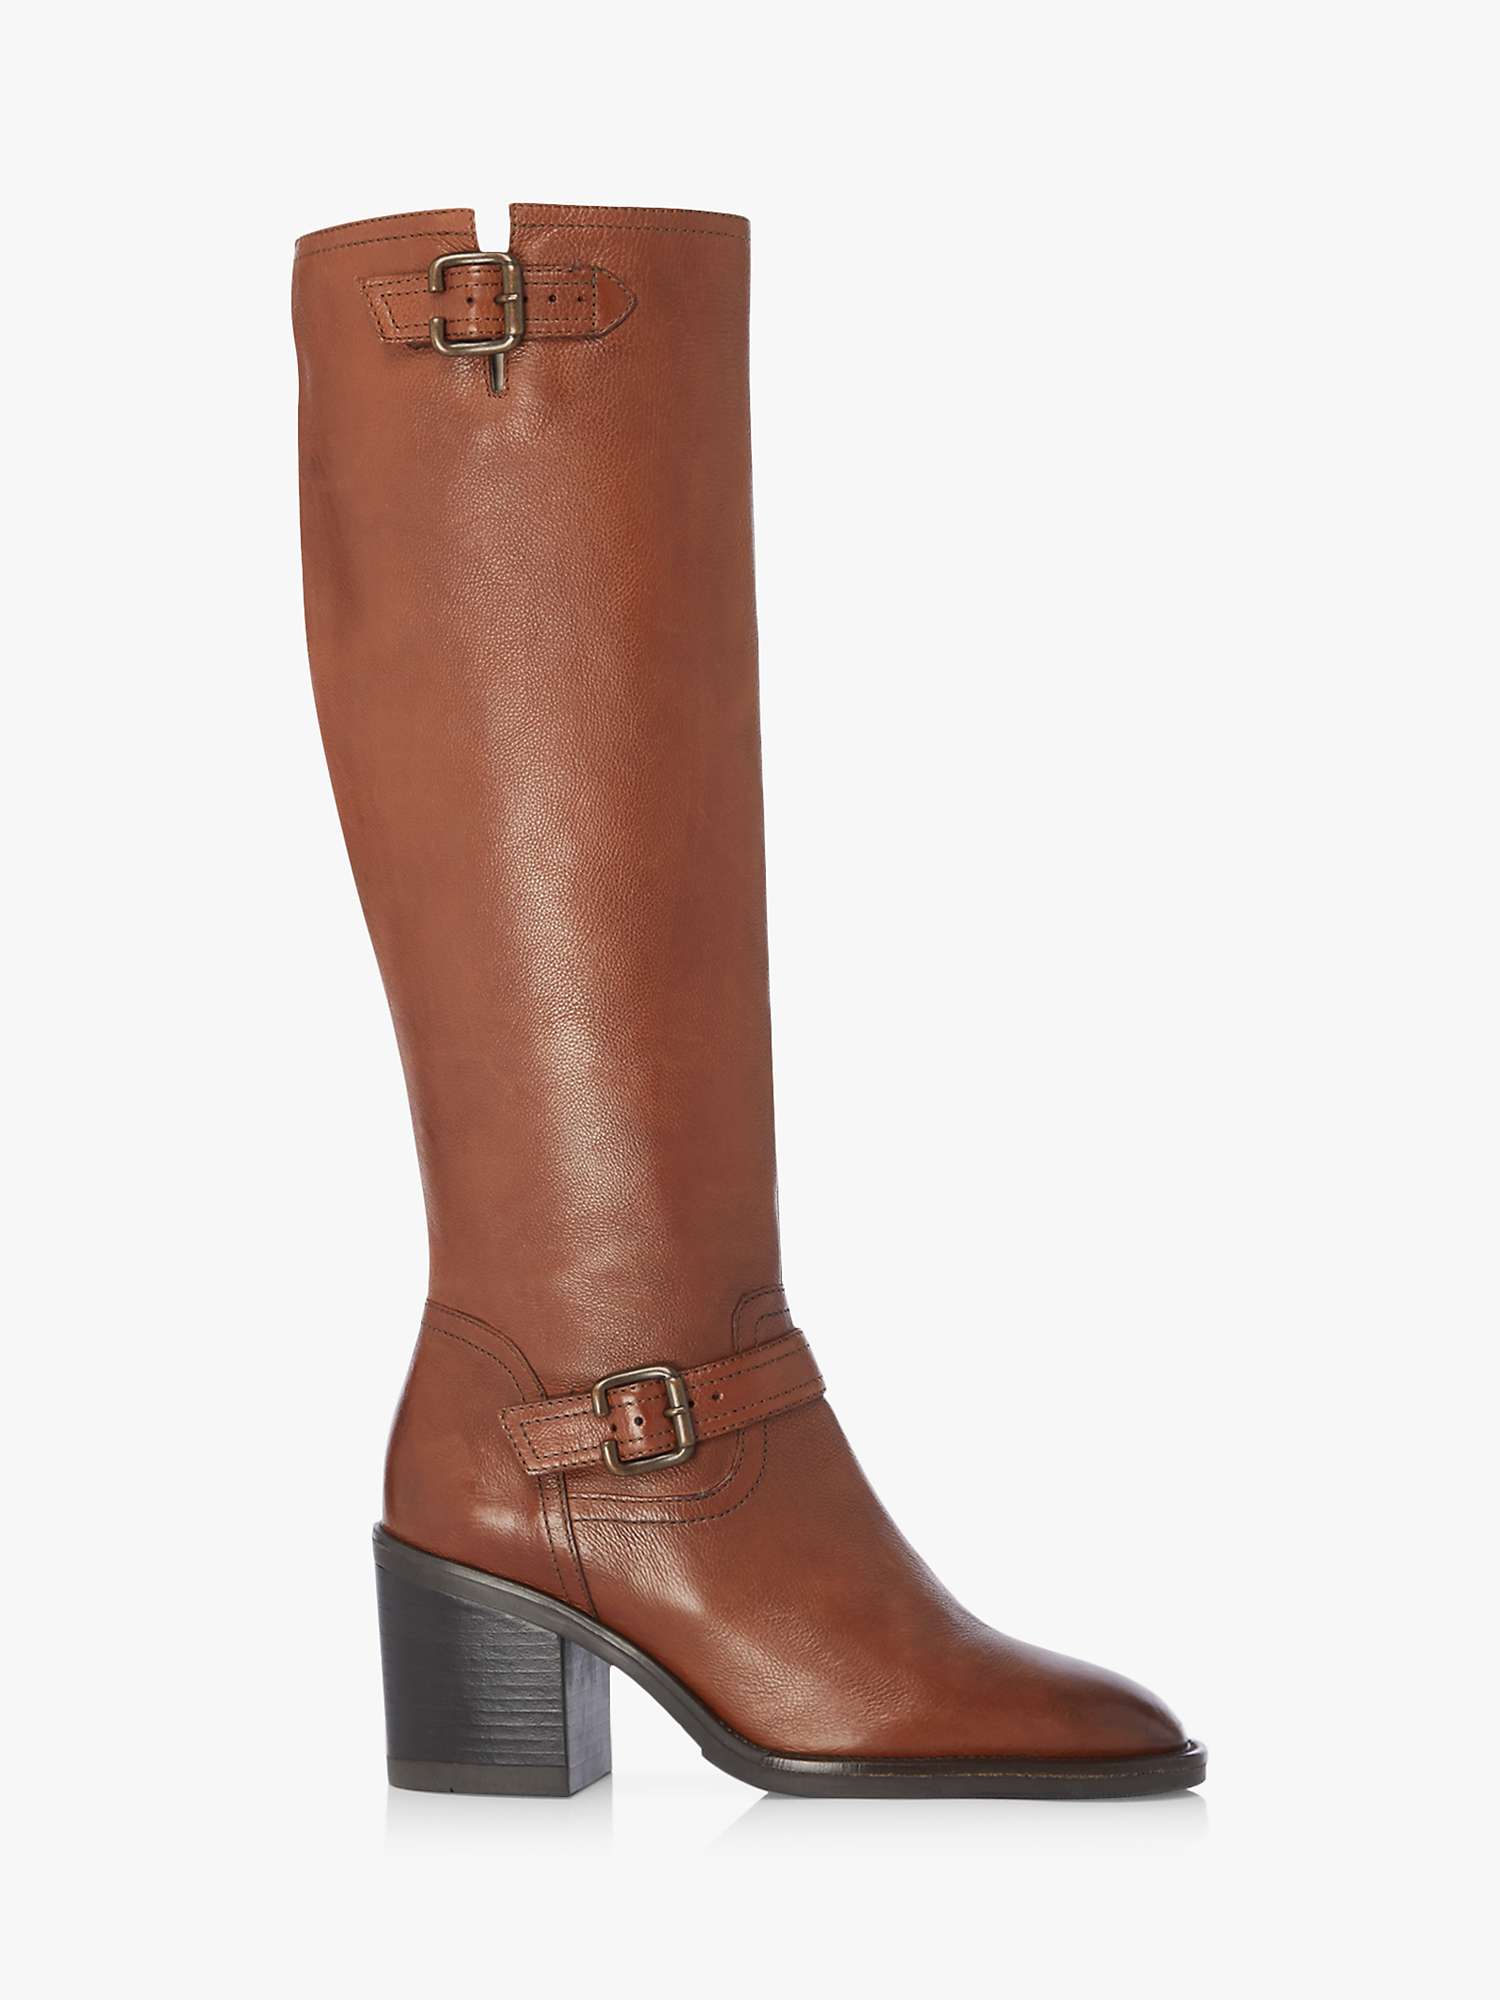 Buy Dune Trelis Leather Double Buckle Block Heel Knee High Boots Online at johnlewis.com